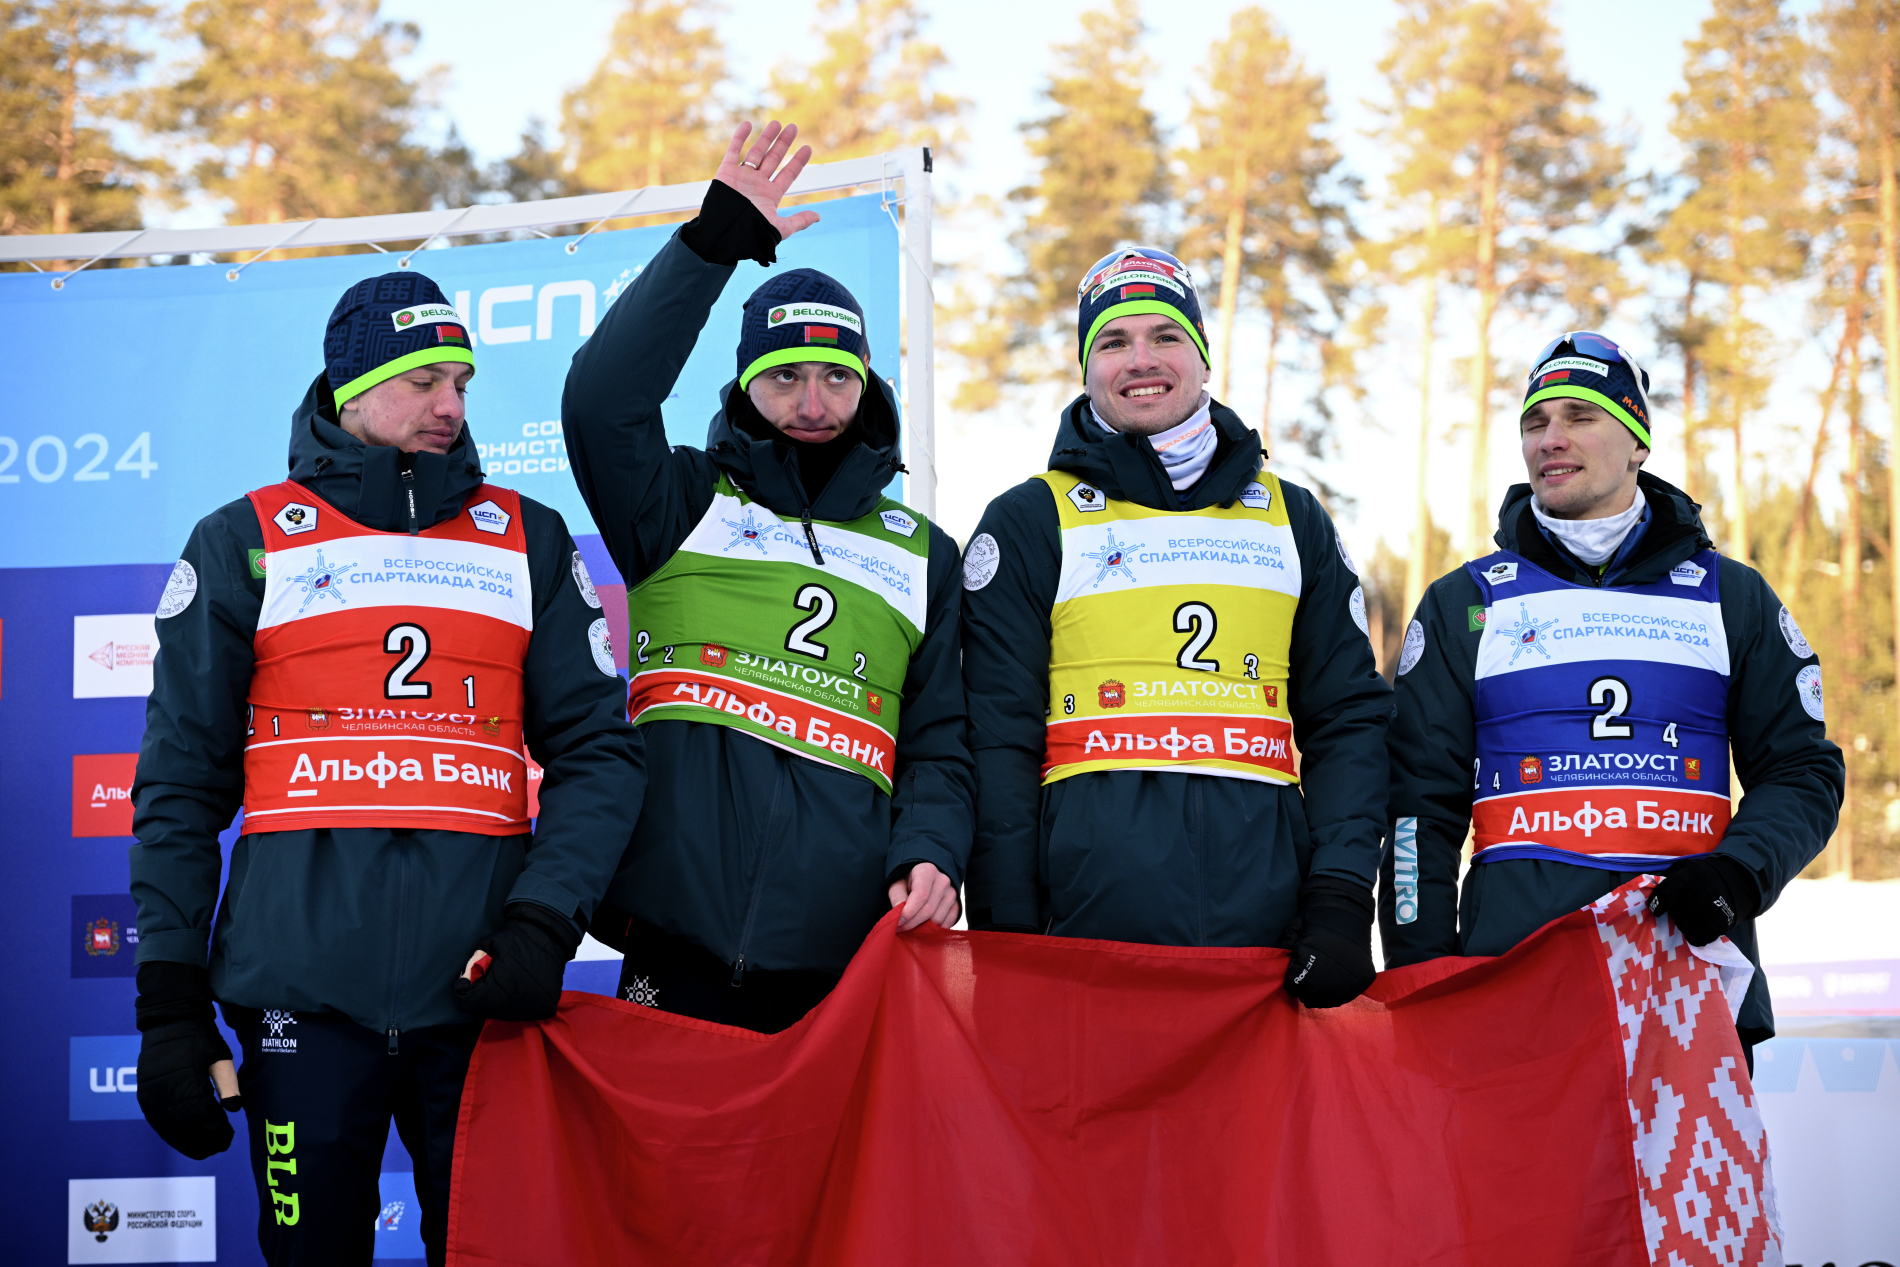 Башкирские биатлонисты отдали бронзовые медали Спартакиады белорусам